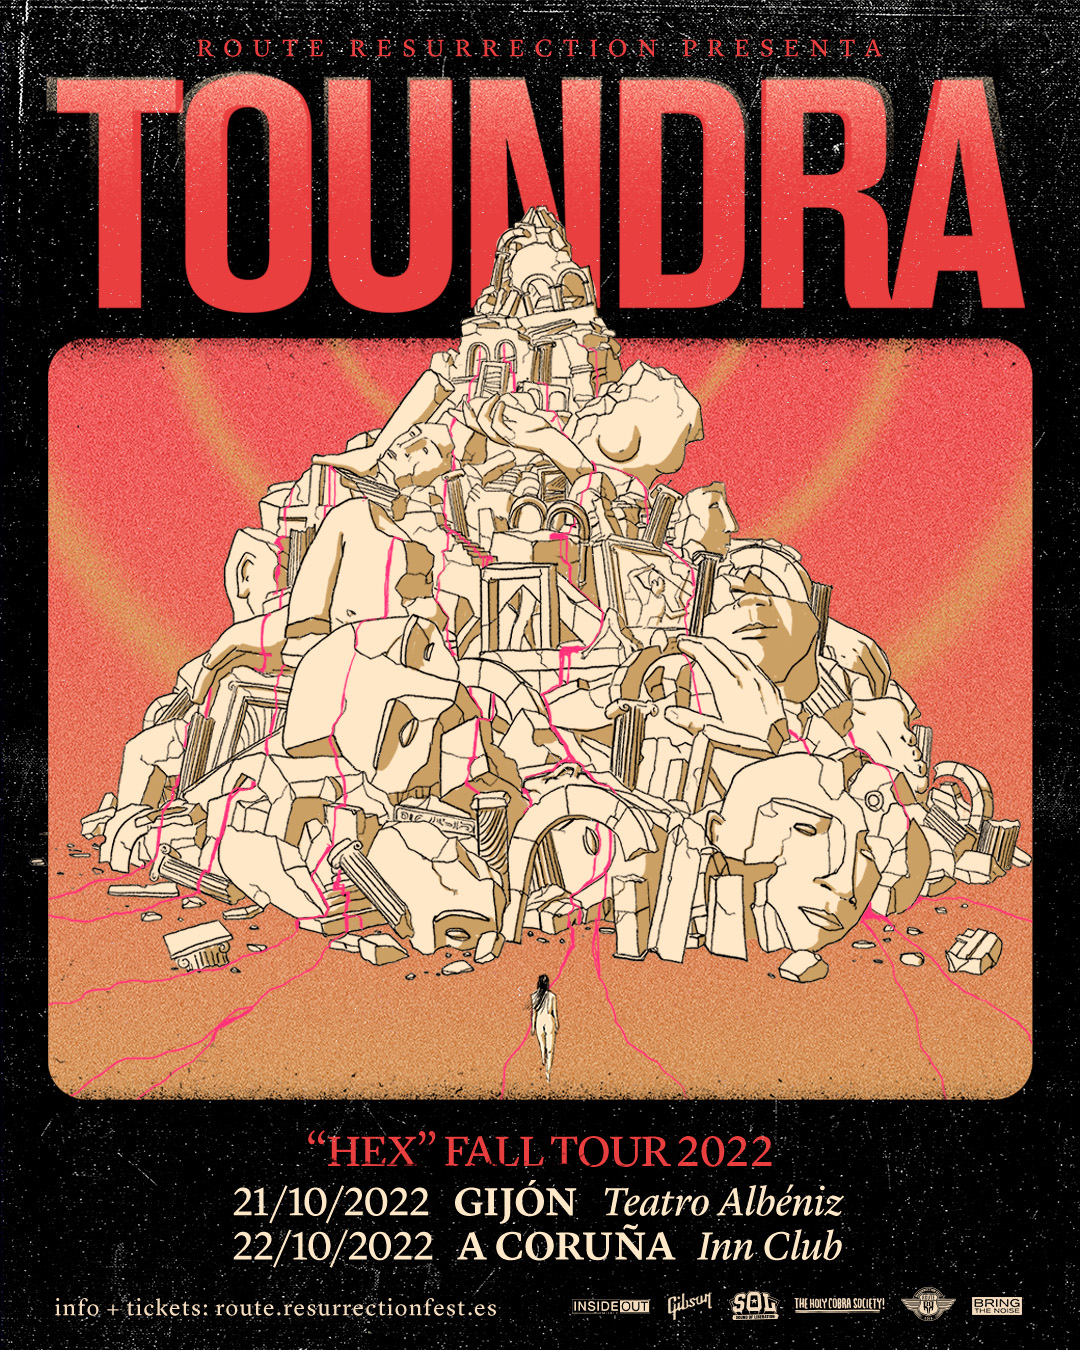 Toundra estará presentando su último trabajo “Hex” en Gijón y A Coruña de la mano de Route Resurrection Re